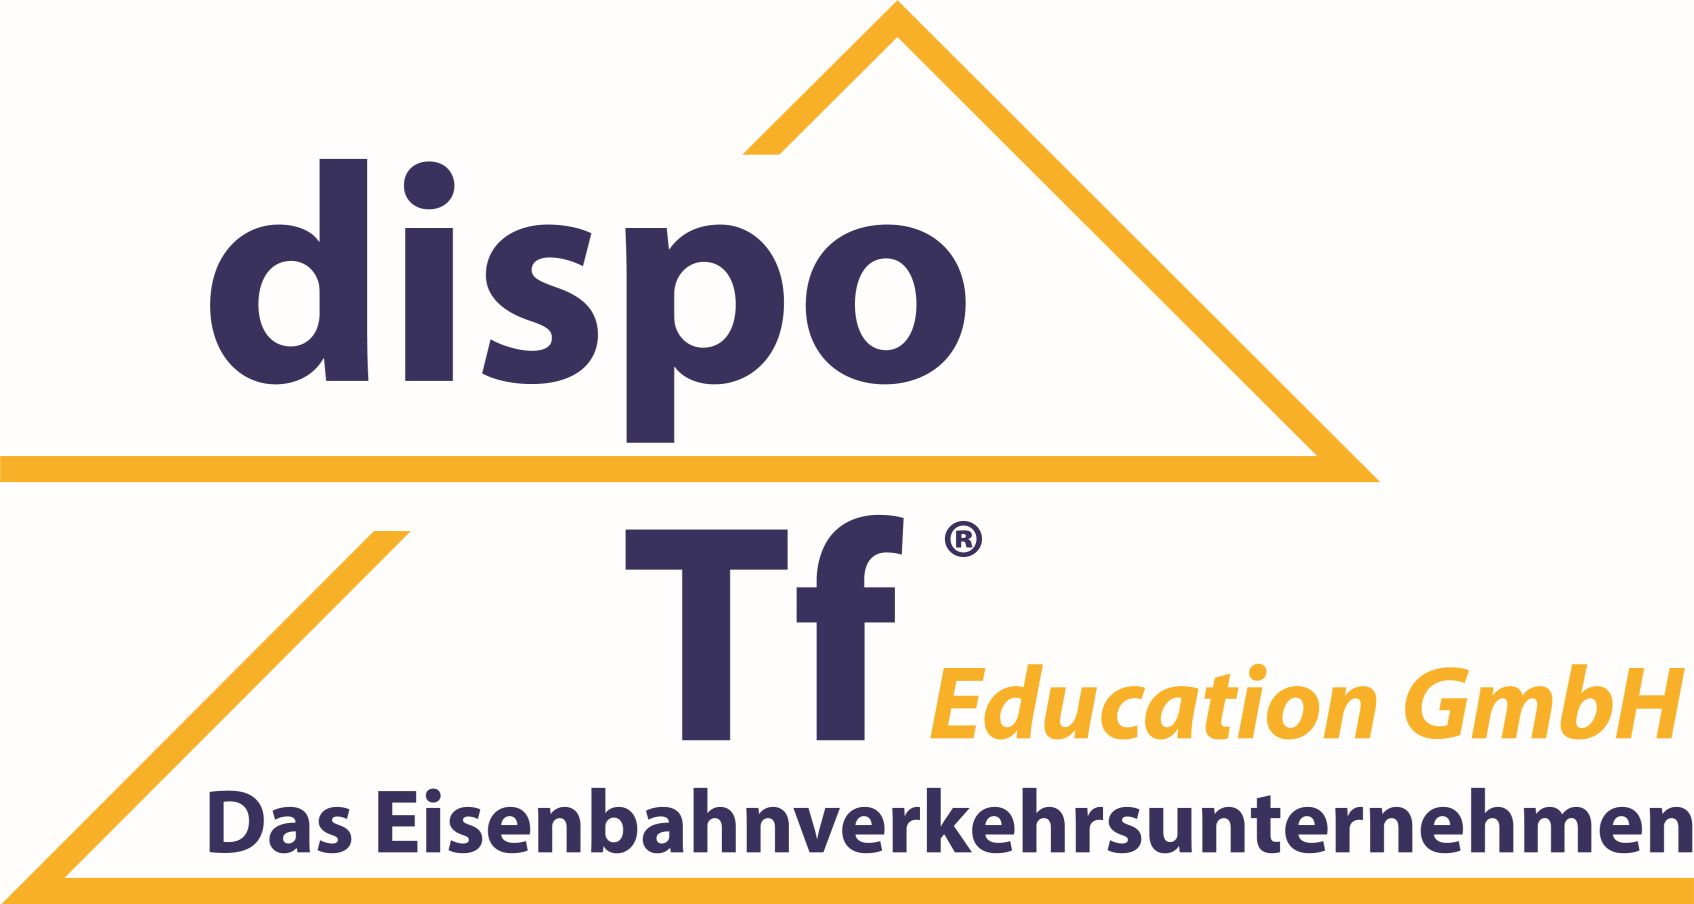 Dozent / Trainer für Triebfahrzeugführer Ausbildung in Bielefeld (m/w/d)